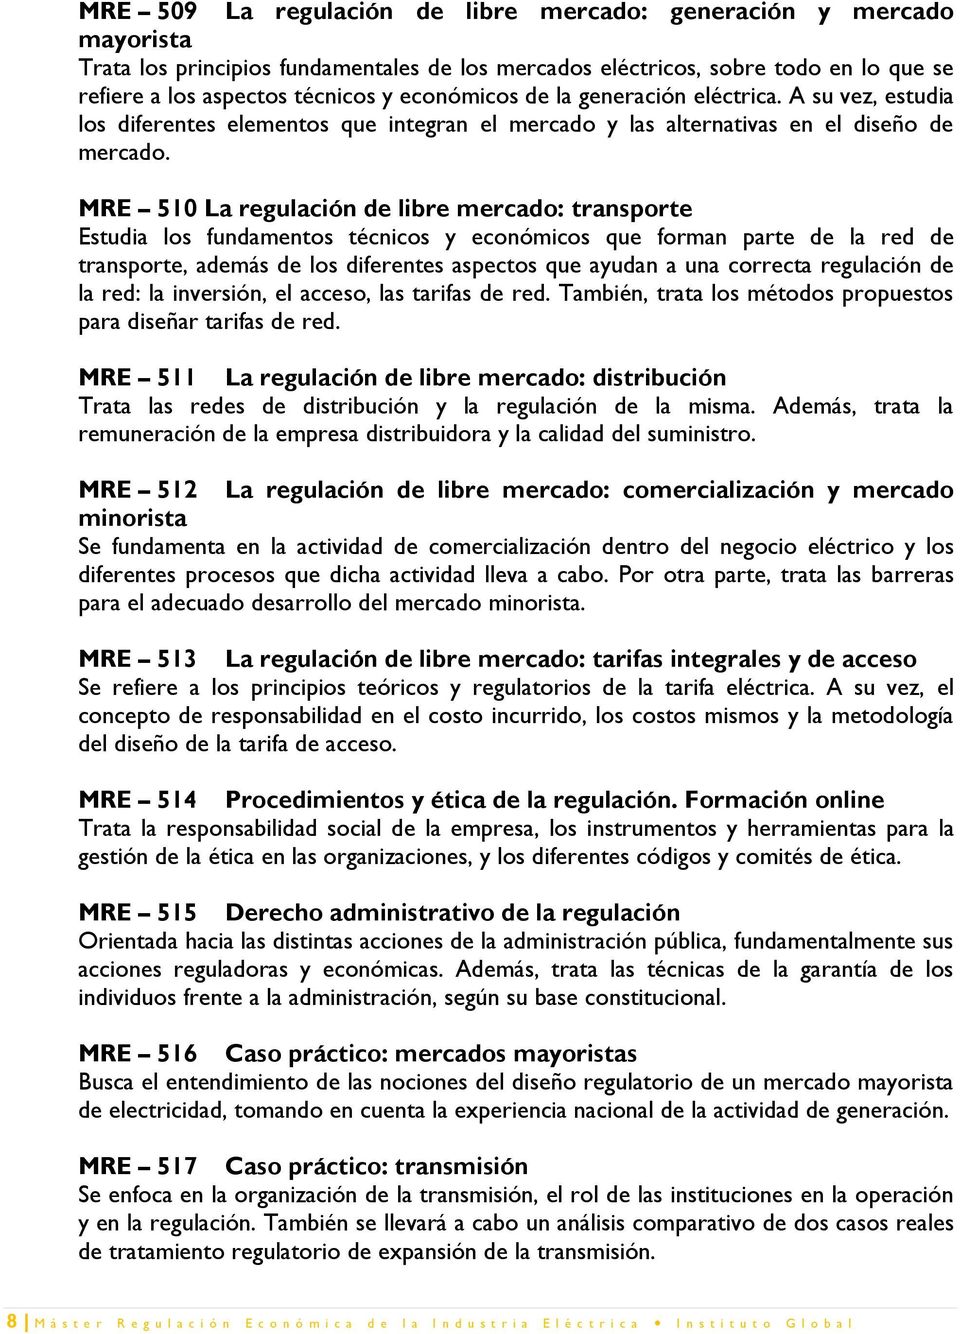 MRE 510 La regulación de libre mercado: transporte Estudia los fundamentos técnicos y económicos que forman parte de la red de transporte, además de los diferentes aspectos que ayudan a una correcta